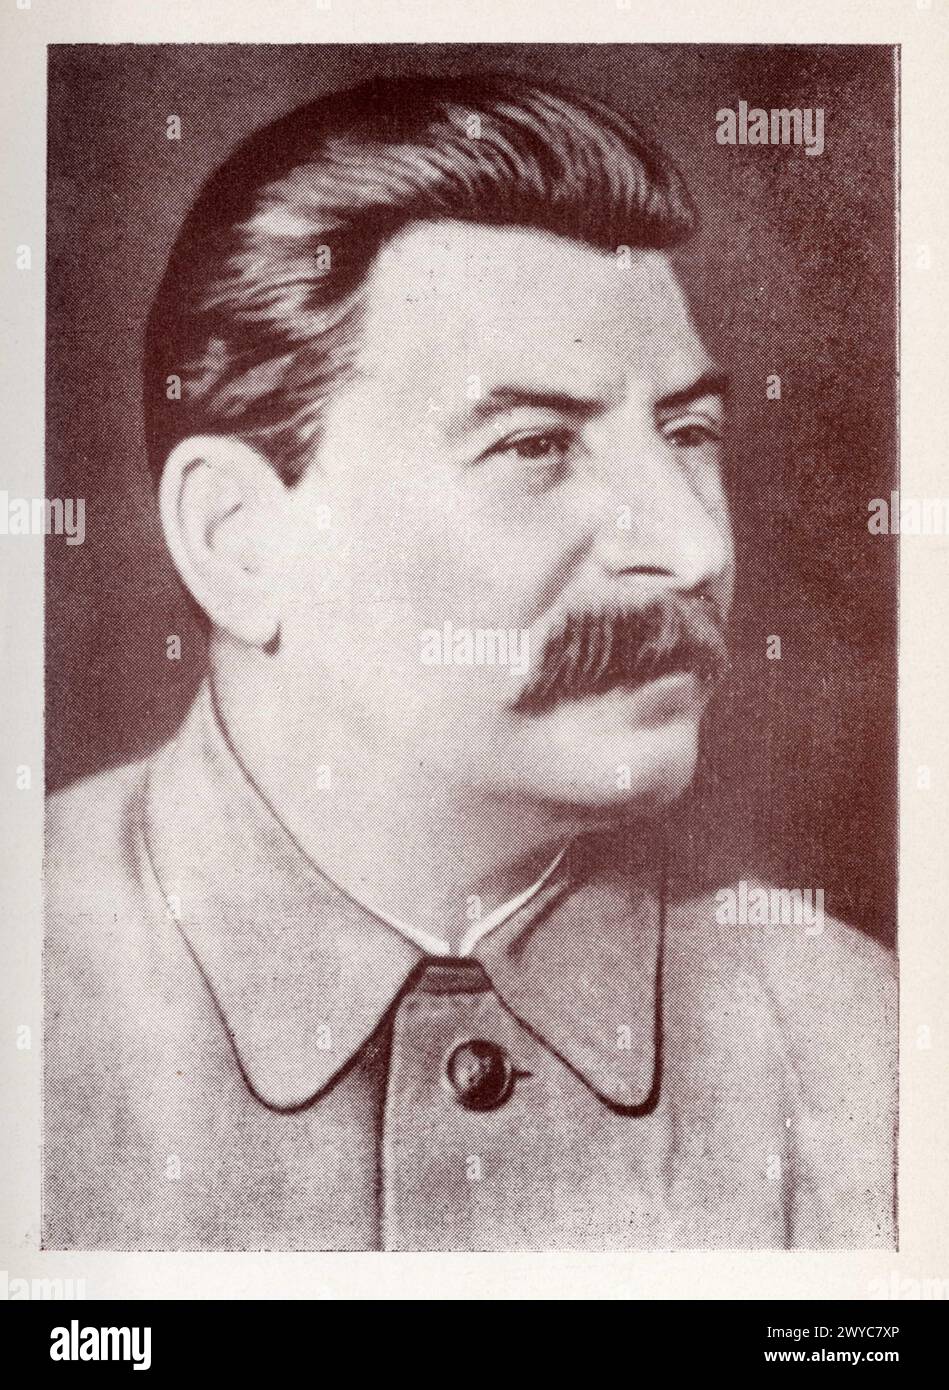 Joseph Staline, né le 18 décembre 1878 à Gori et mort le 5 Mars 1953 à Moscou, est un révolutionnaire bolchevik et homme d'État soviétique d'origine g Foto Stock